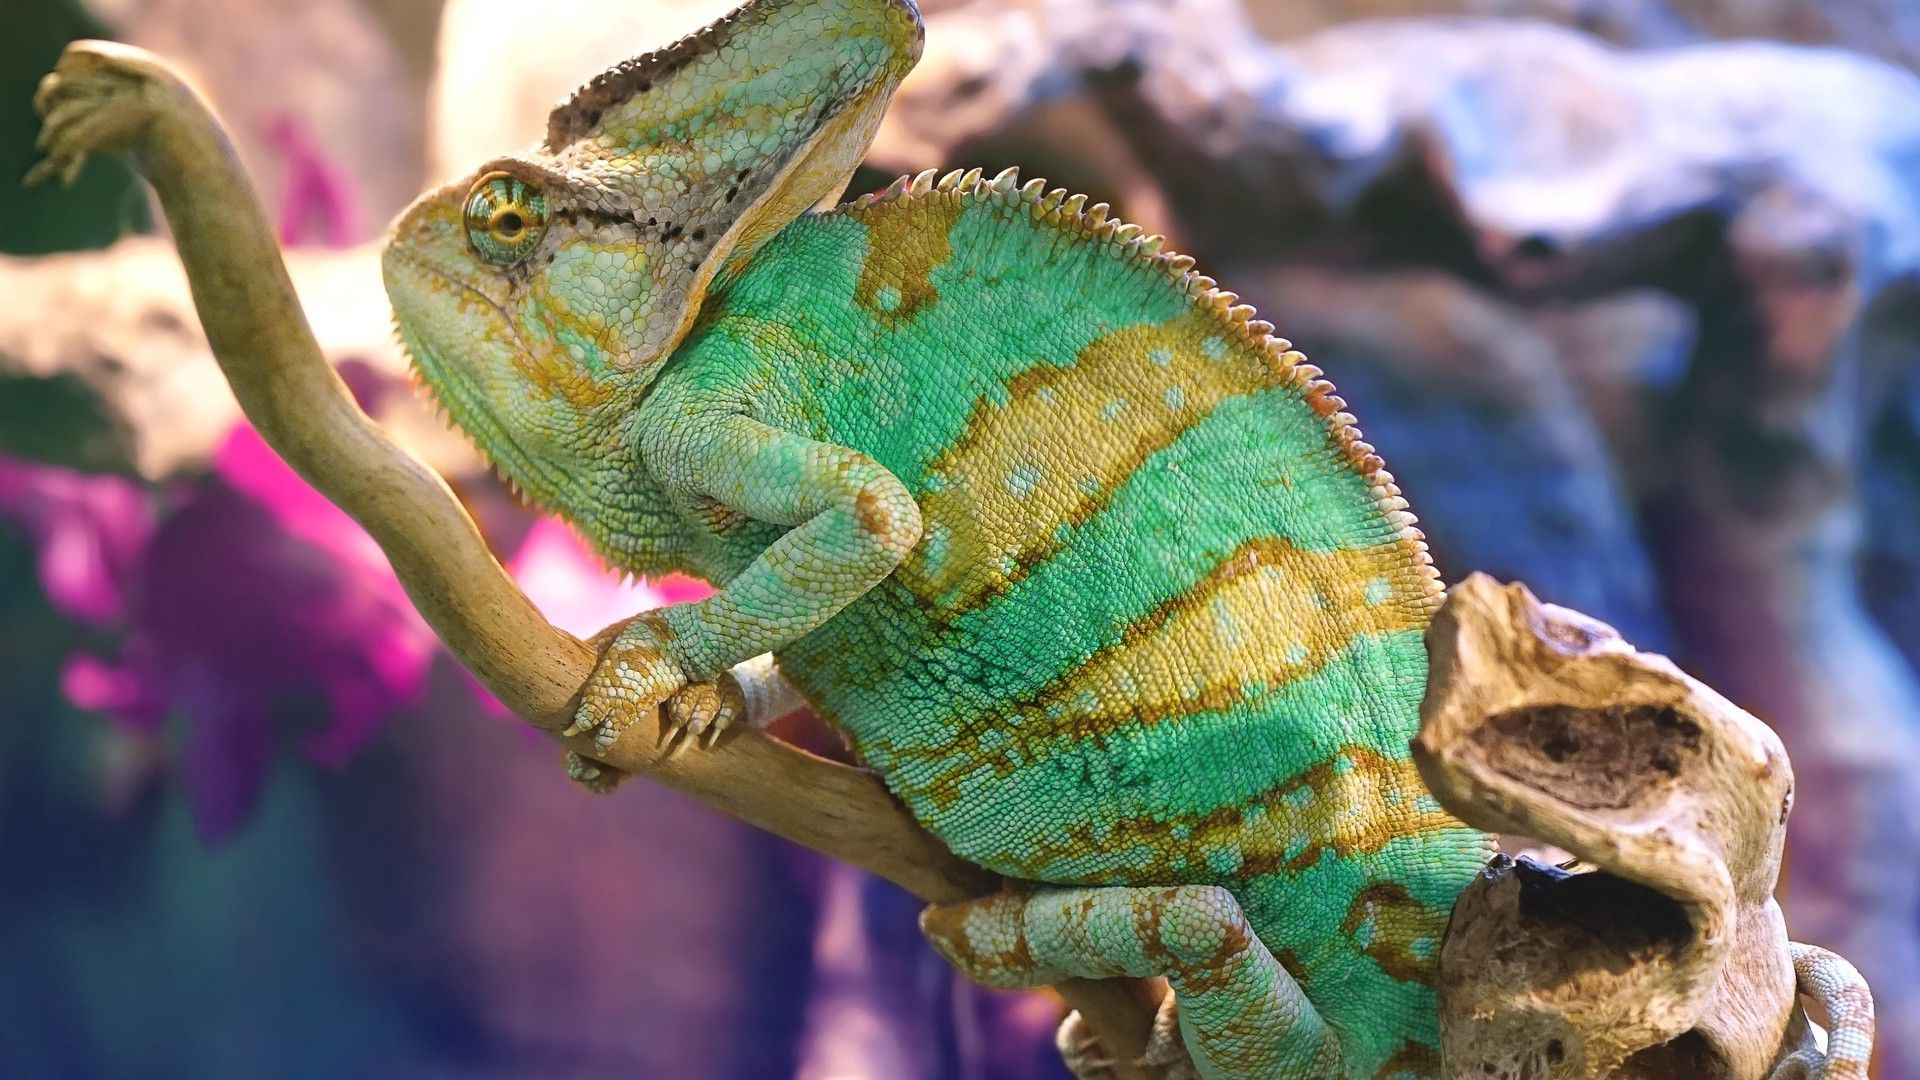 Yemen Chameleon